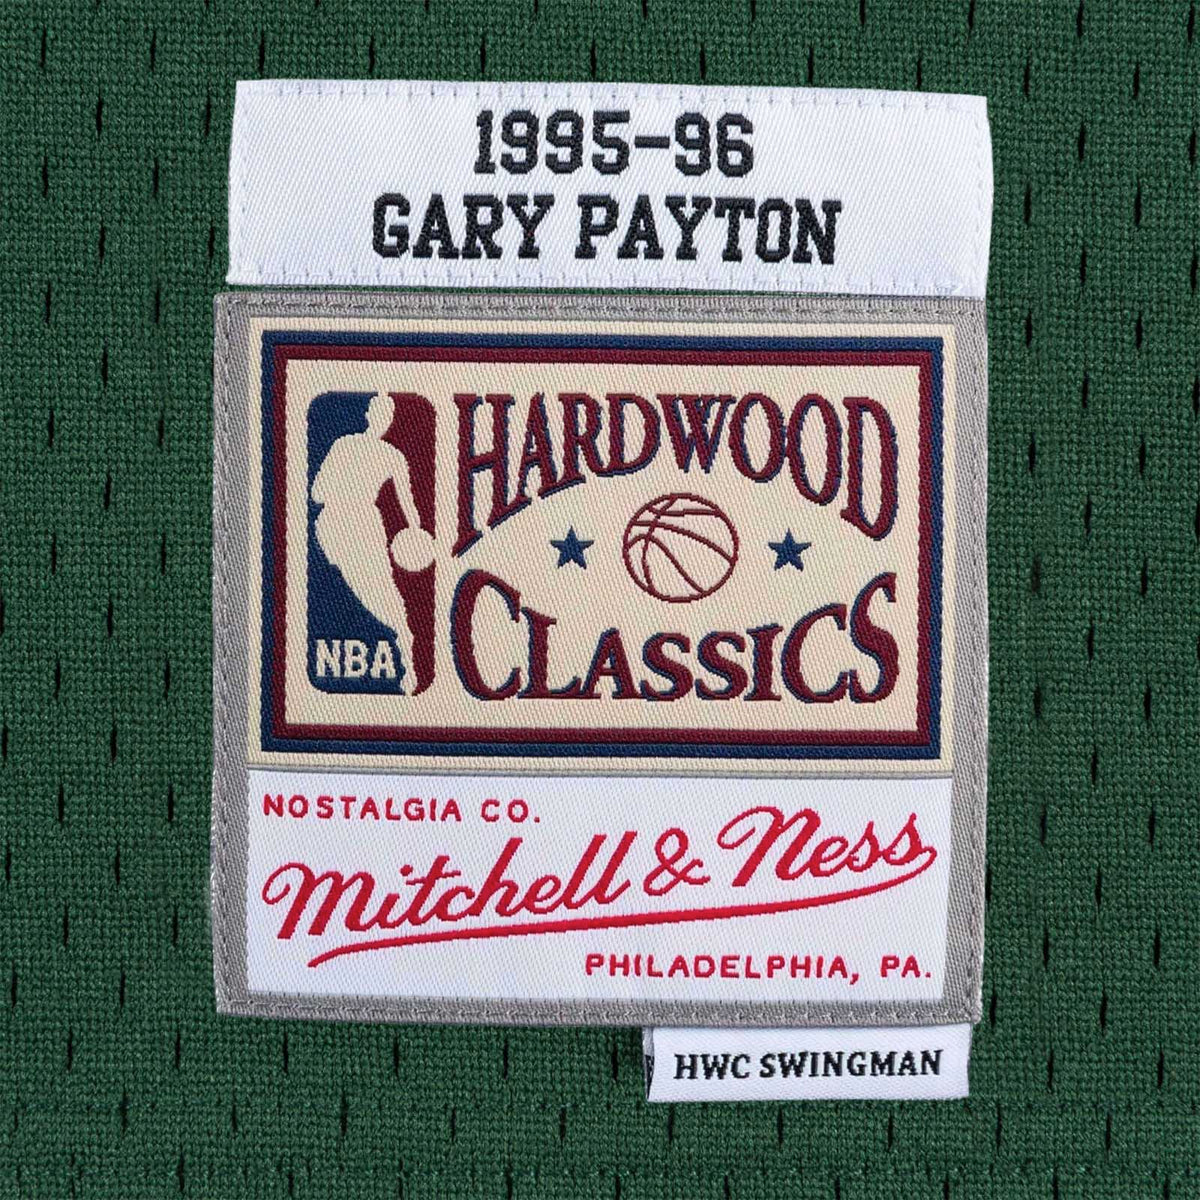 Mitchell & Ness Swingman Seattle SuperSonics Road 1995-96 Gary Payton Jersey, Green